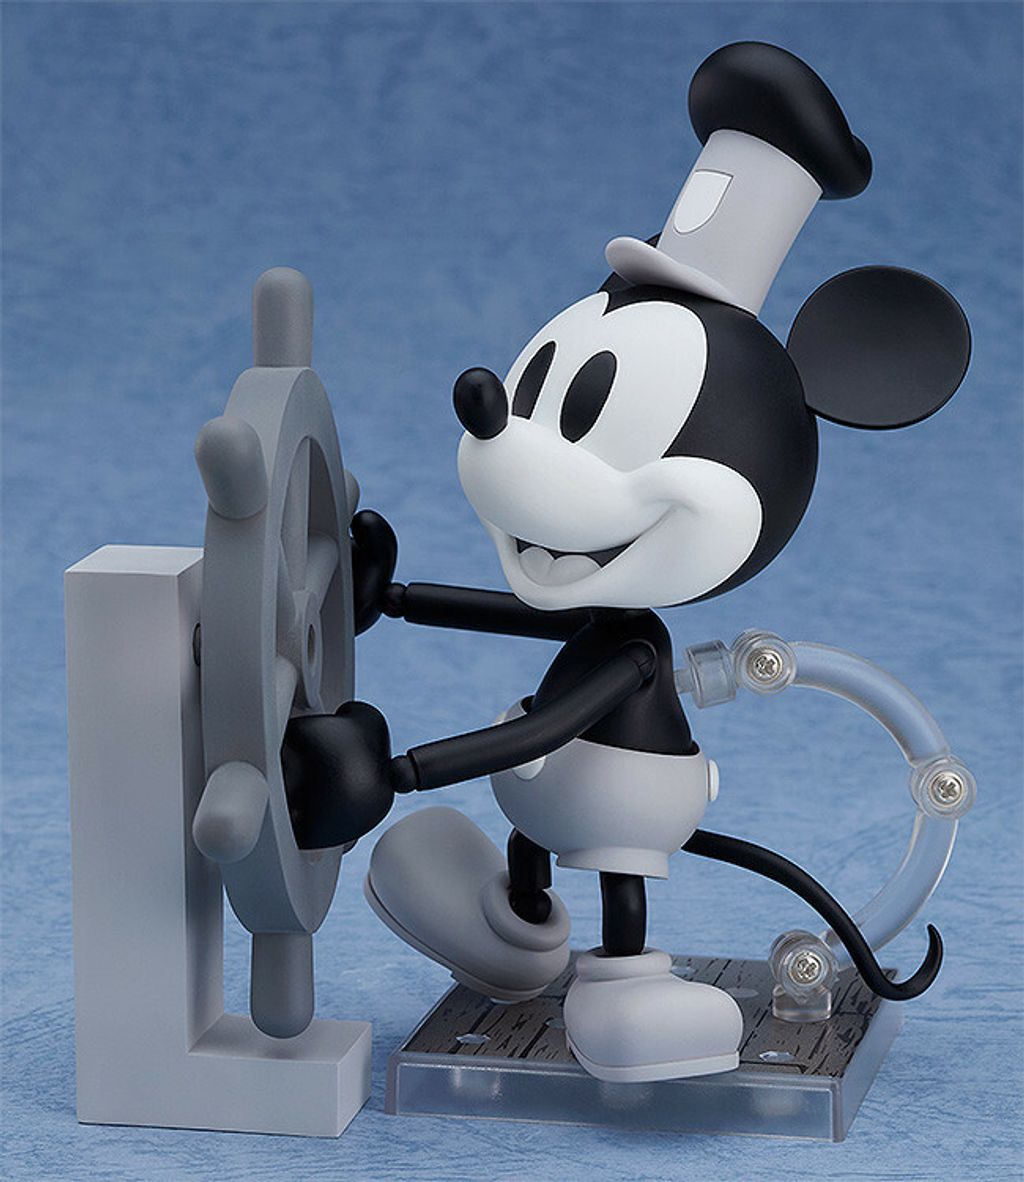 Nendoroid Mickey Mouse 1928 Ver. (Black & White).jpg